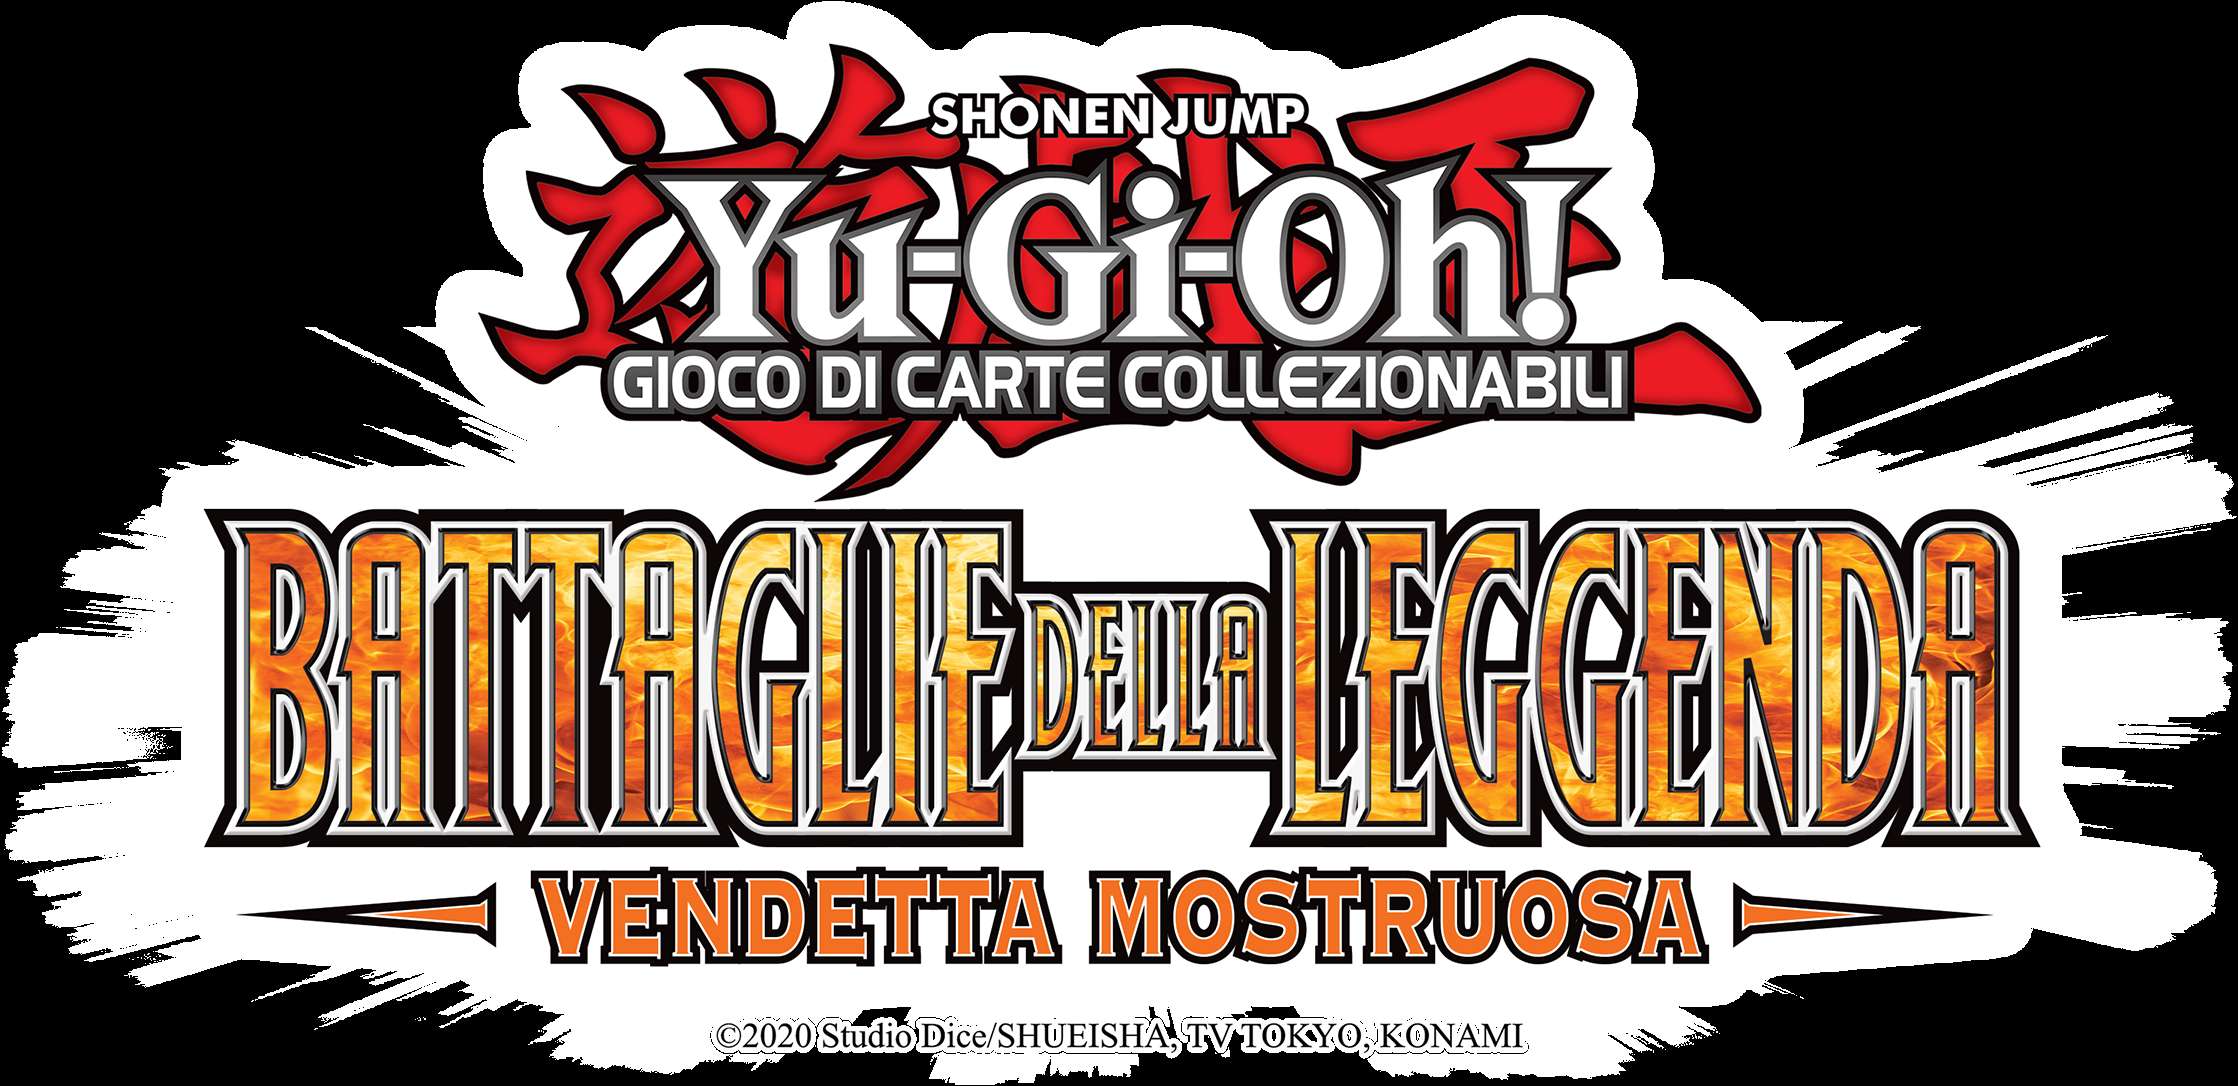 Nuova Battaglie Della Leggenda: Vendetta Mostruosa per Yu-Gi-Oh! GIOCO DI CARTE COLLEZIONABILI